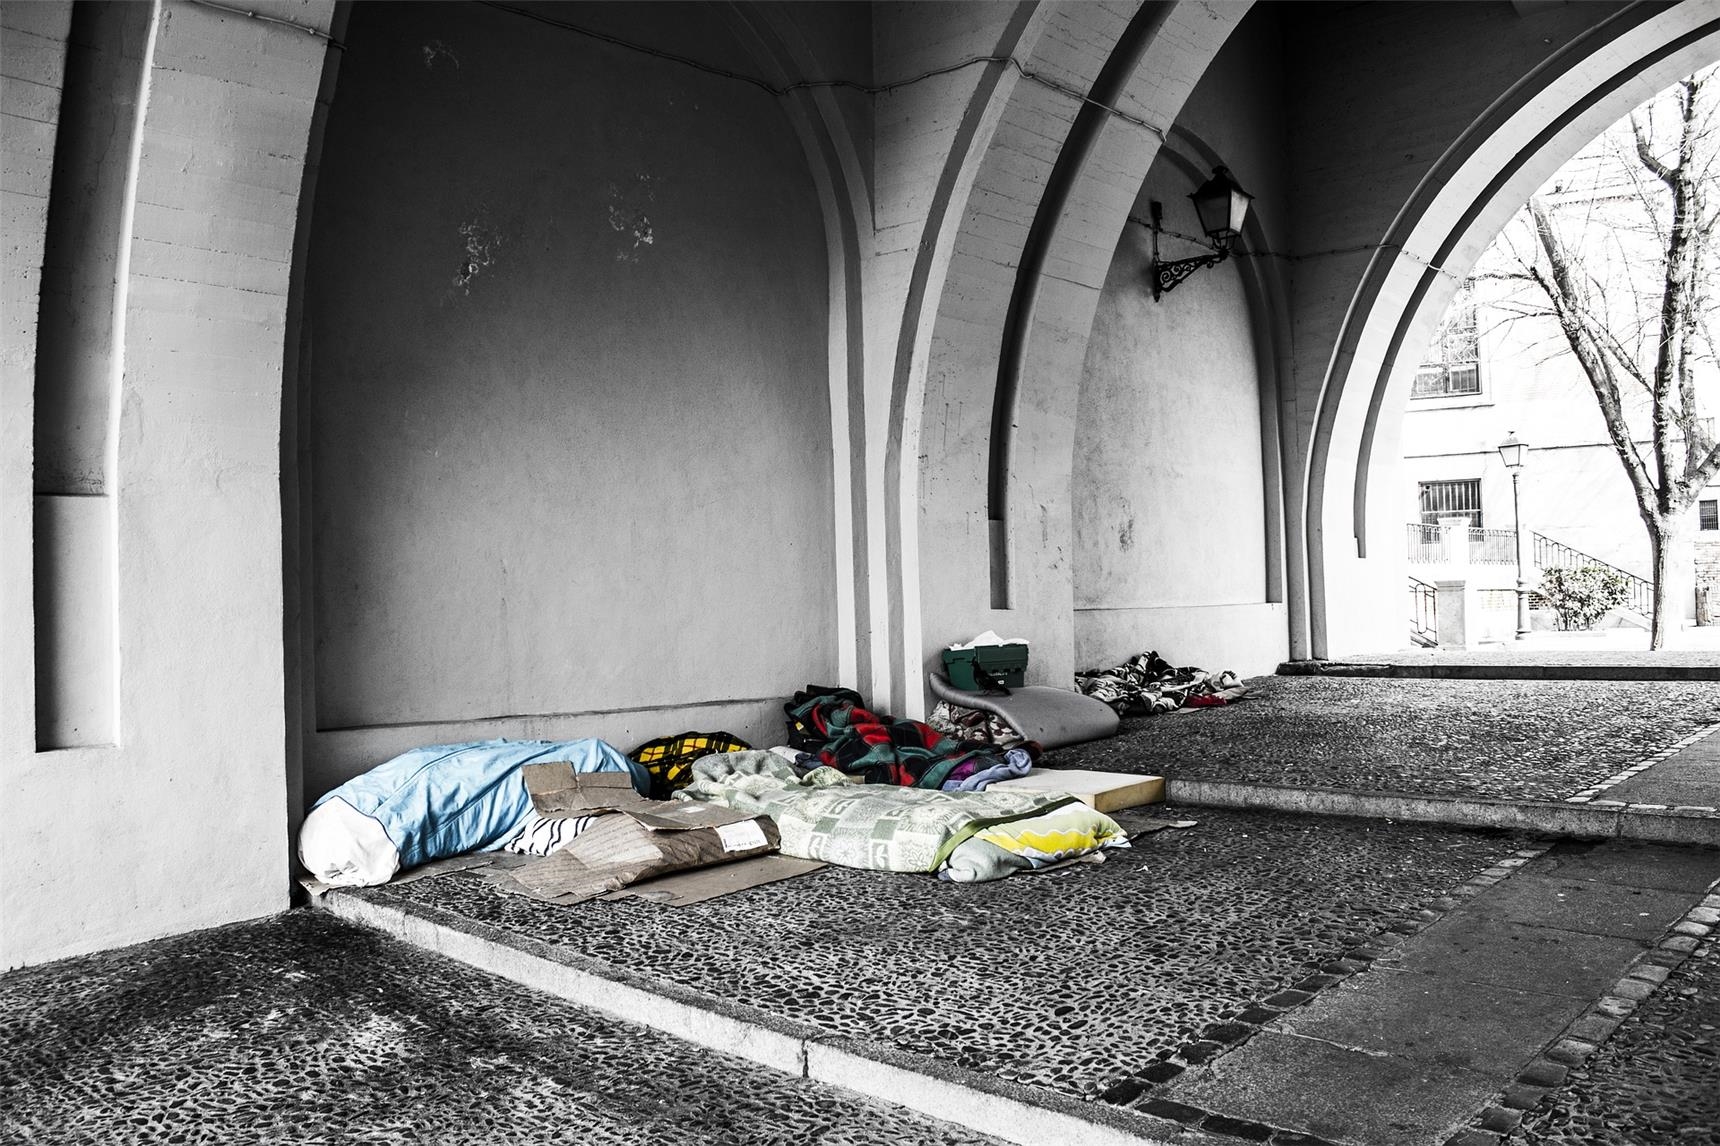 Symbolbild Obdachlos Wohnungslos